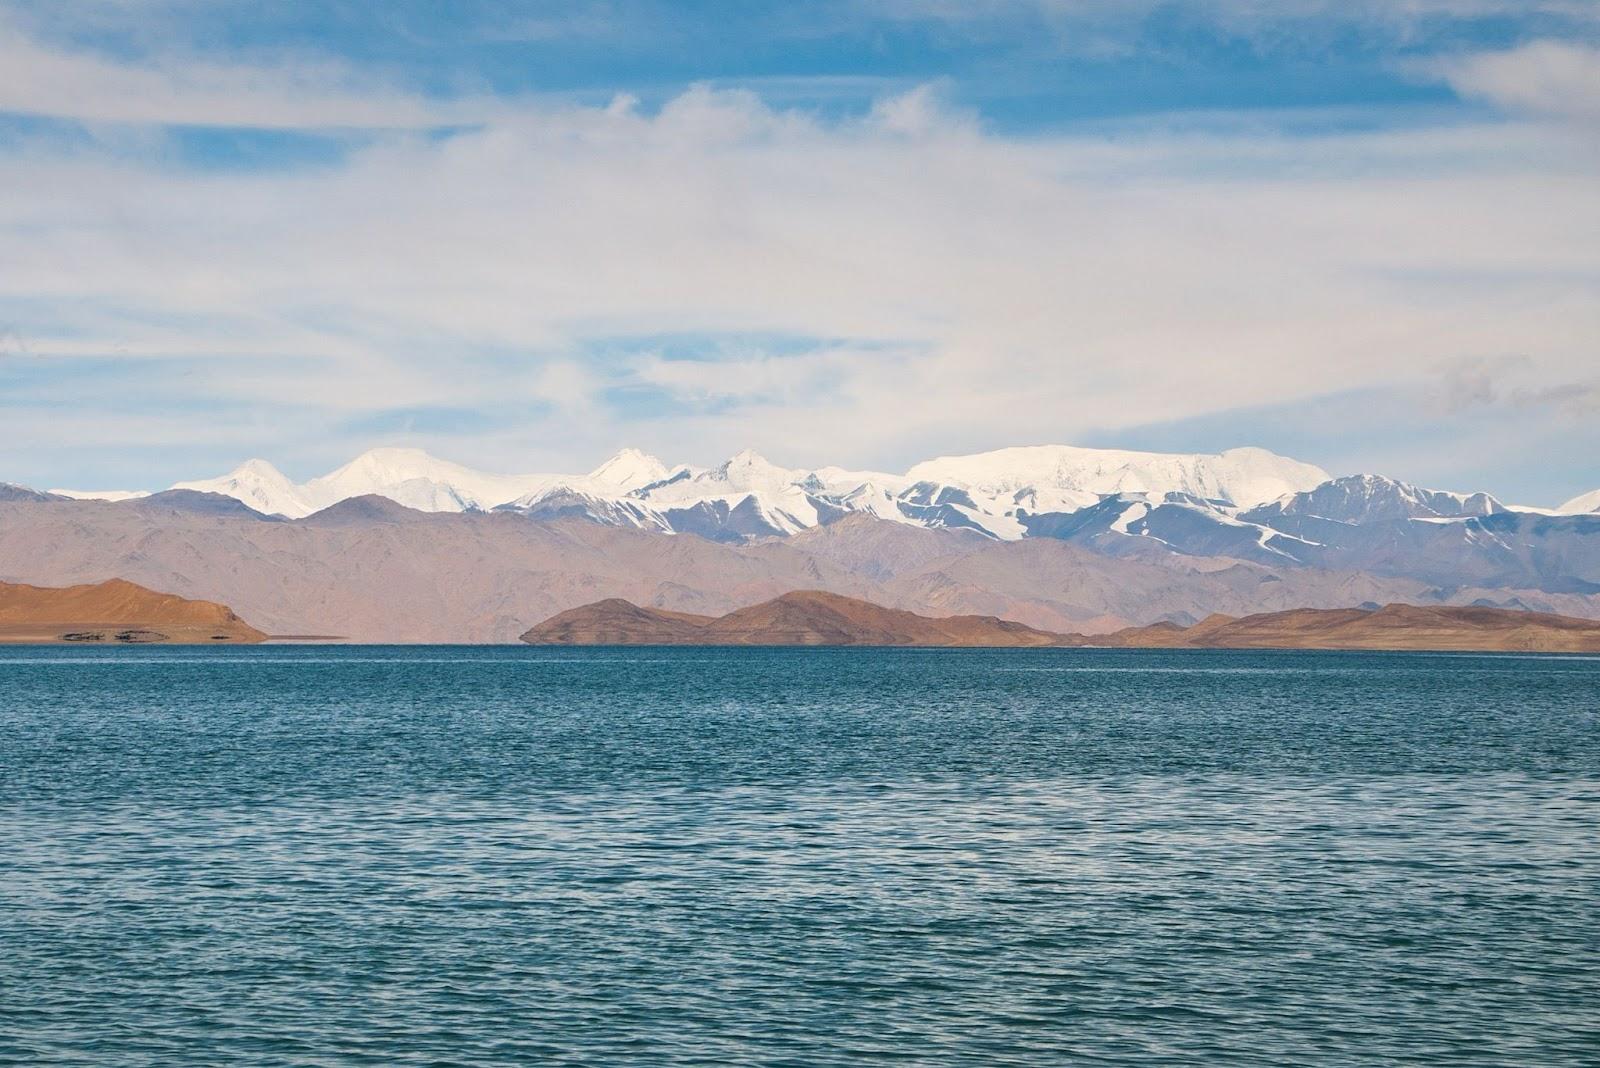 Lake Kara-Kul during the day